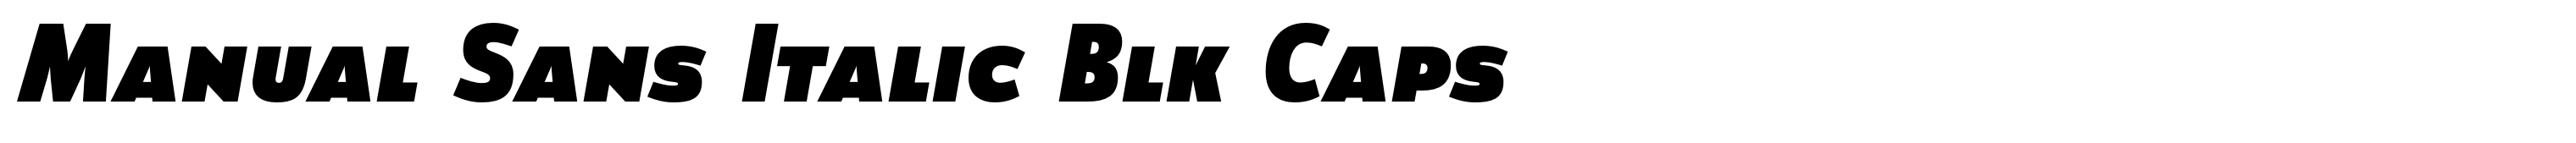 Manual Sans Italic Blk Caps